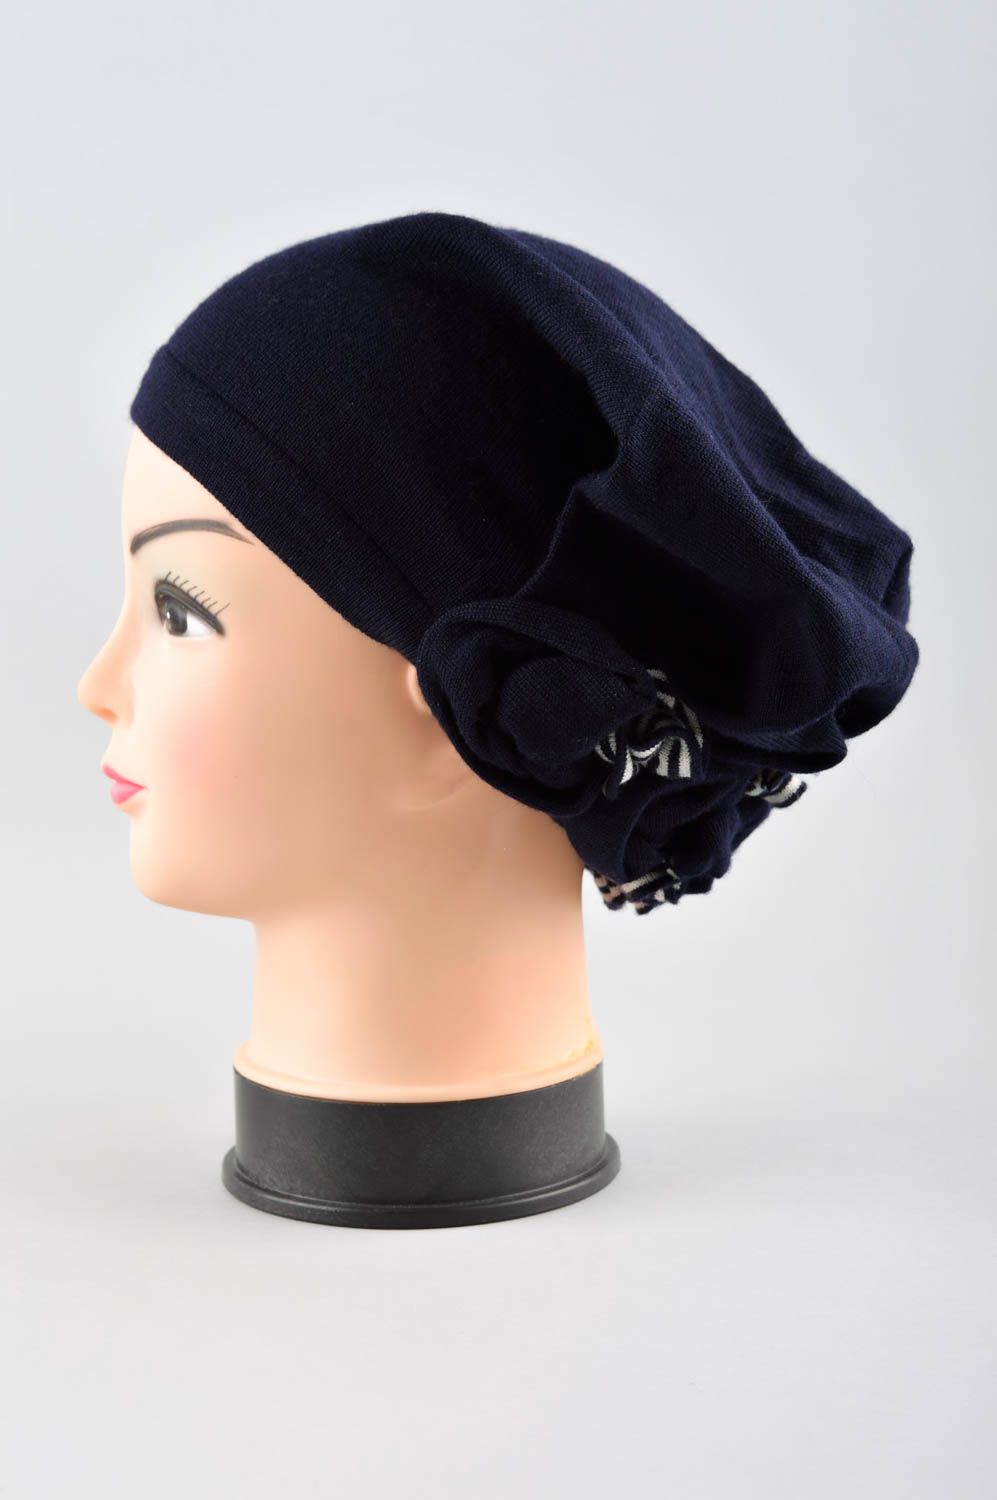 Handmade women hat winter hat winter accessories for girls elegant warm hat photo 2